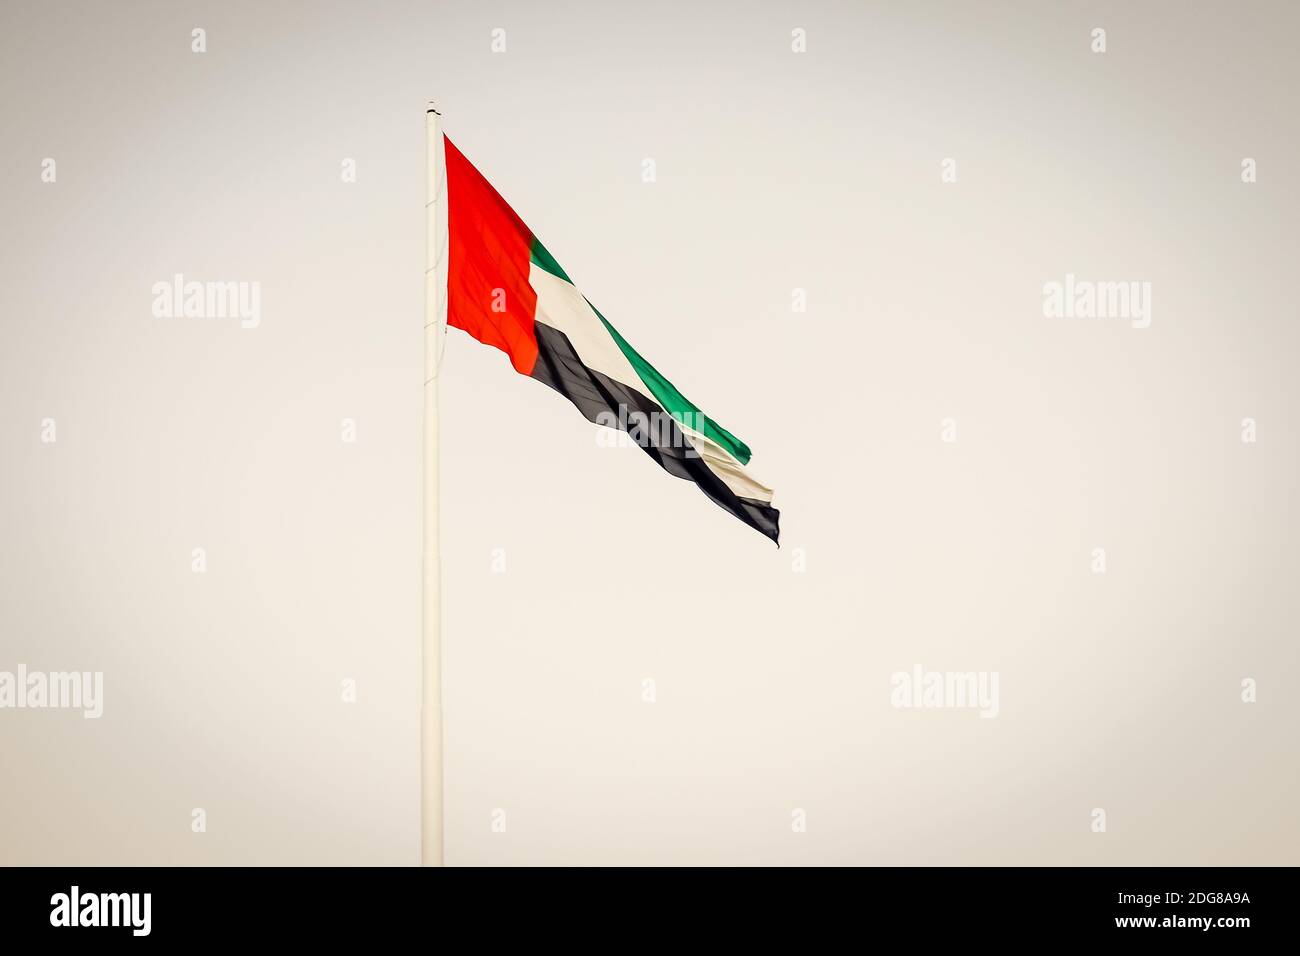 Flag of United Arab Emirates, the capital city of UAE Stock Photo